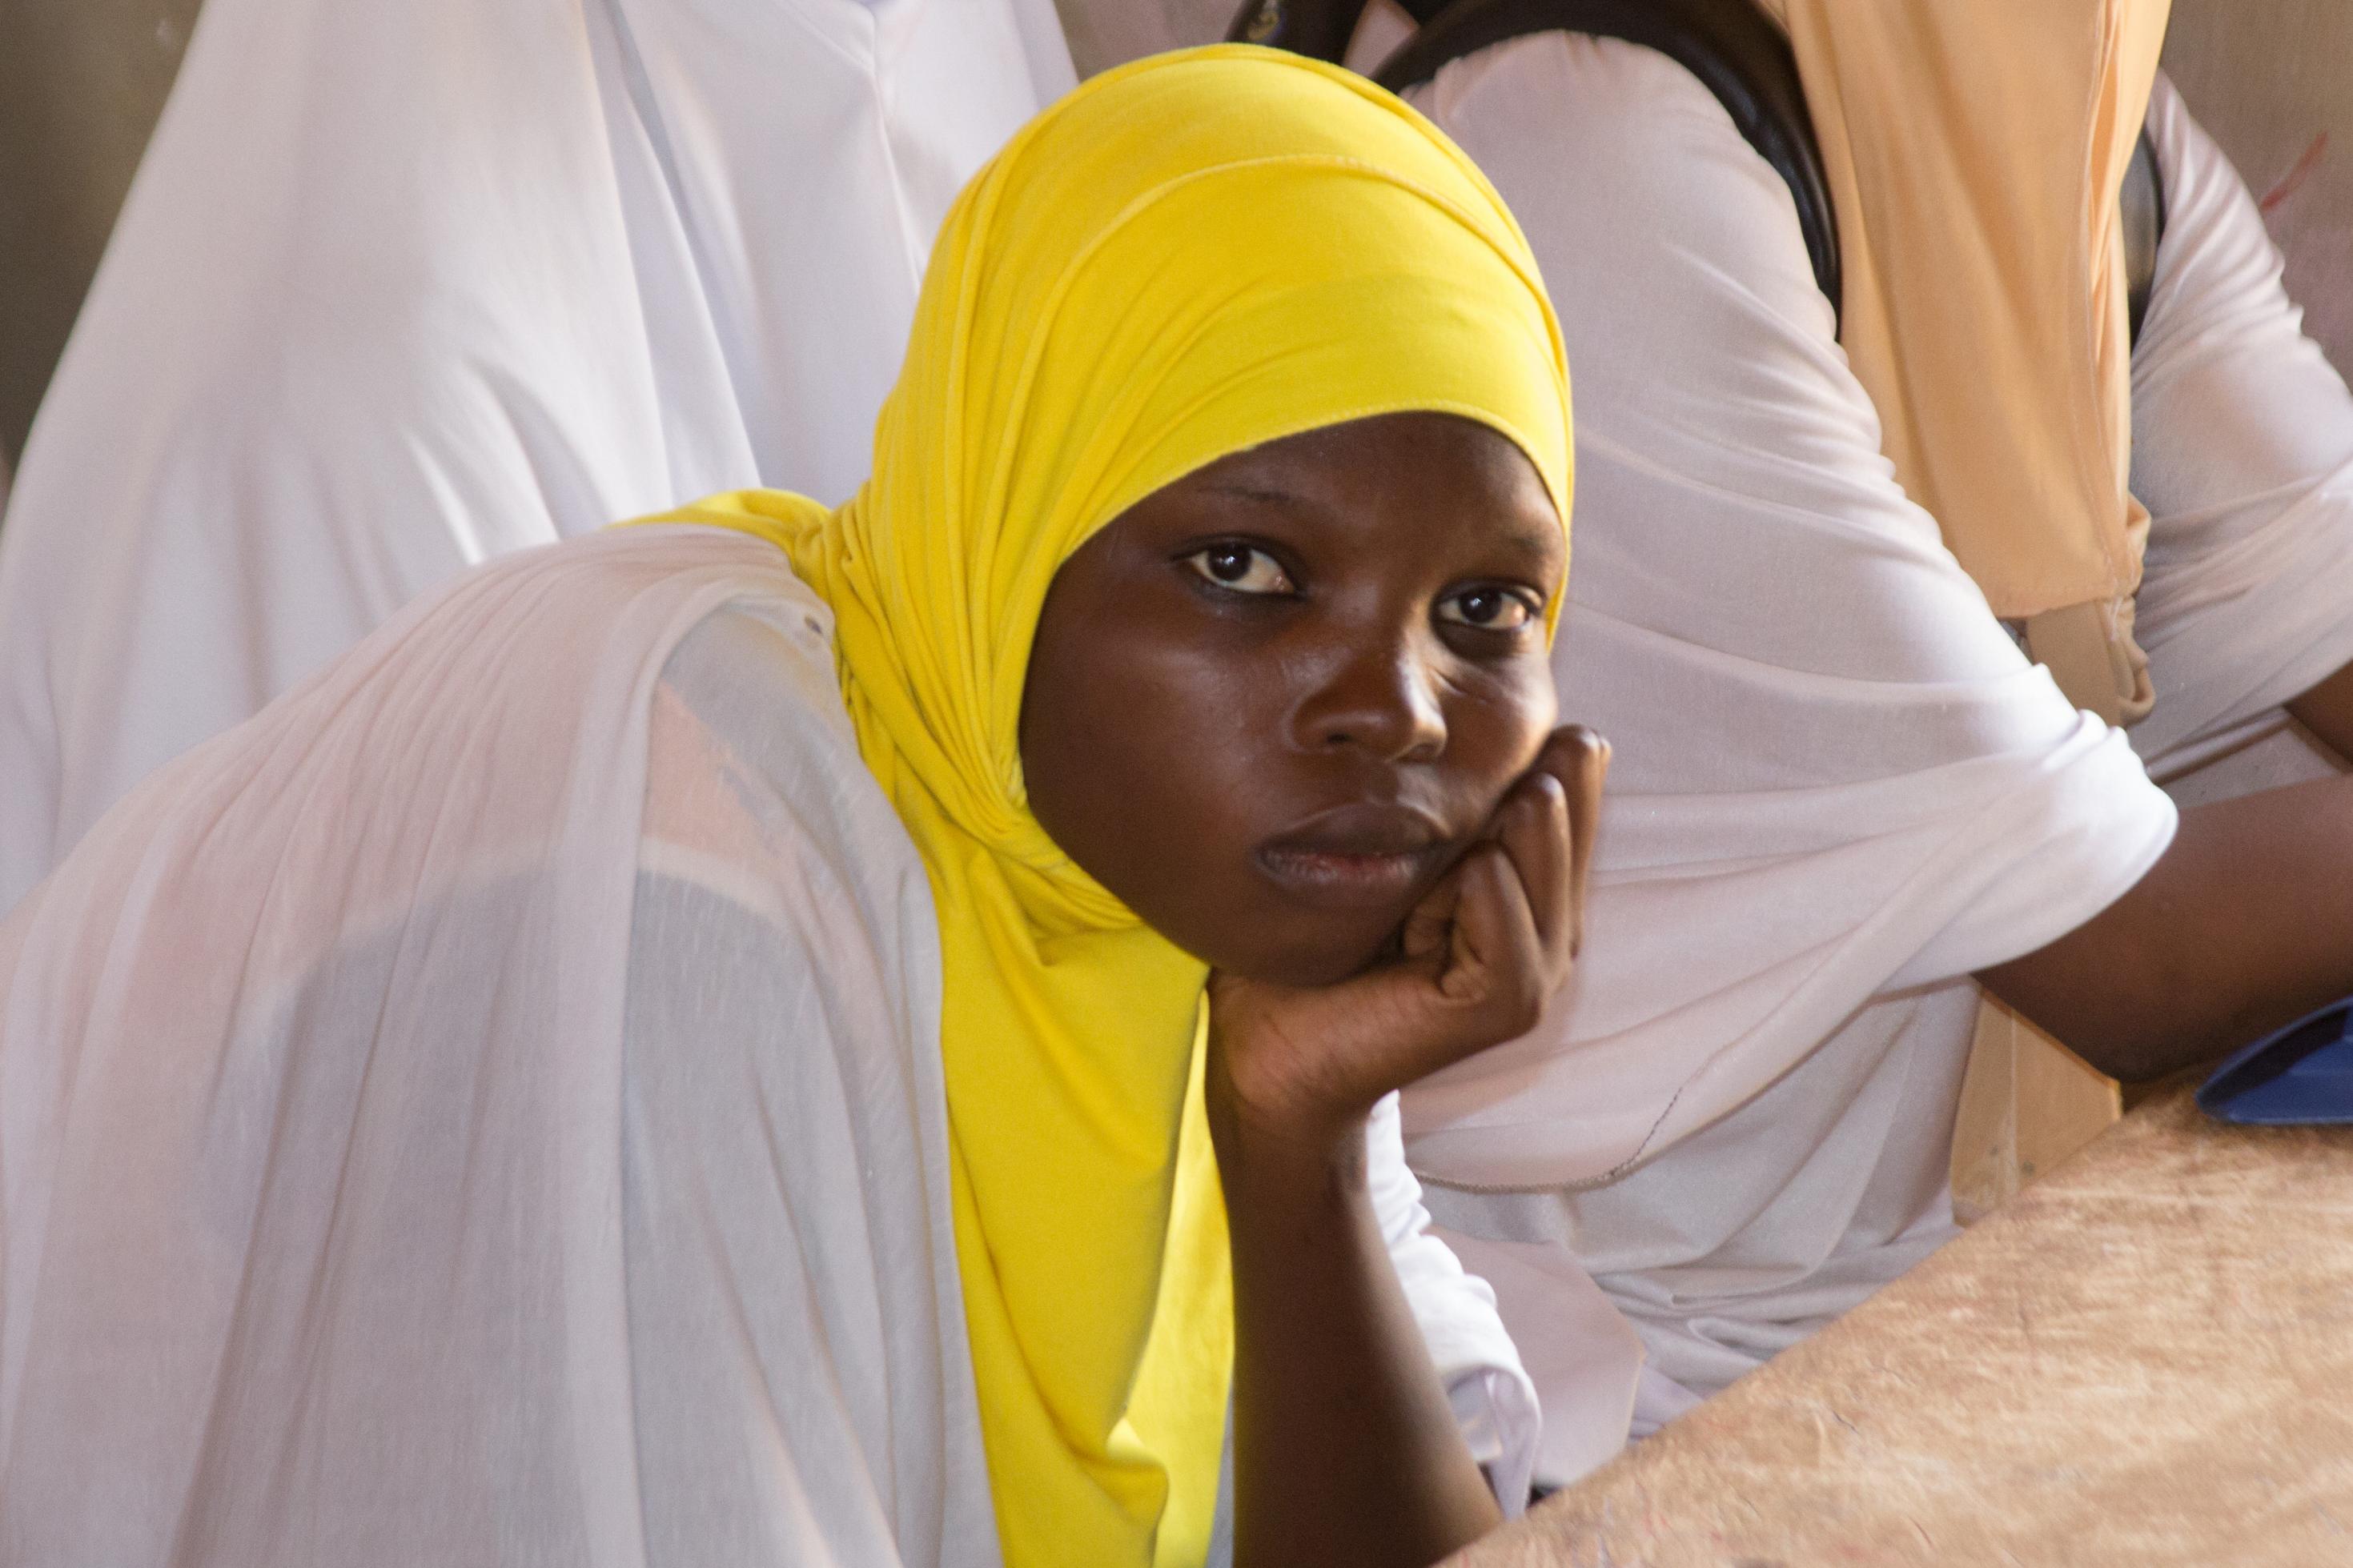 Eine Schülerin blickt die Betrachterin/ den Betrachter direkt an, um sie herum sind weitere Schülerinnen zu sehen. Alle tragen weiße Kleidung und farbige Kopftücher.